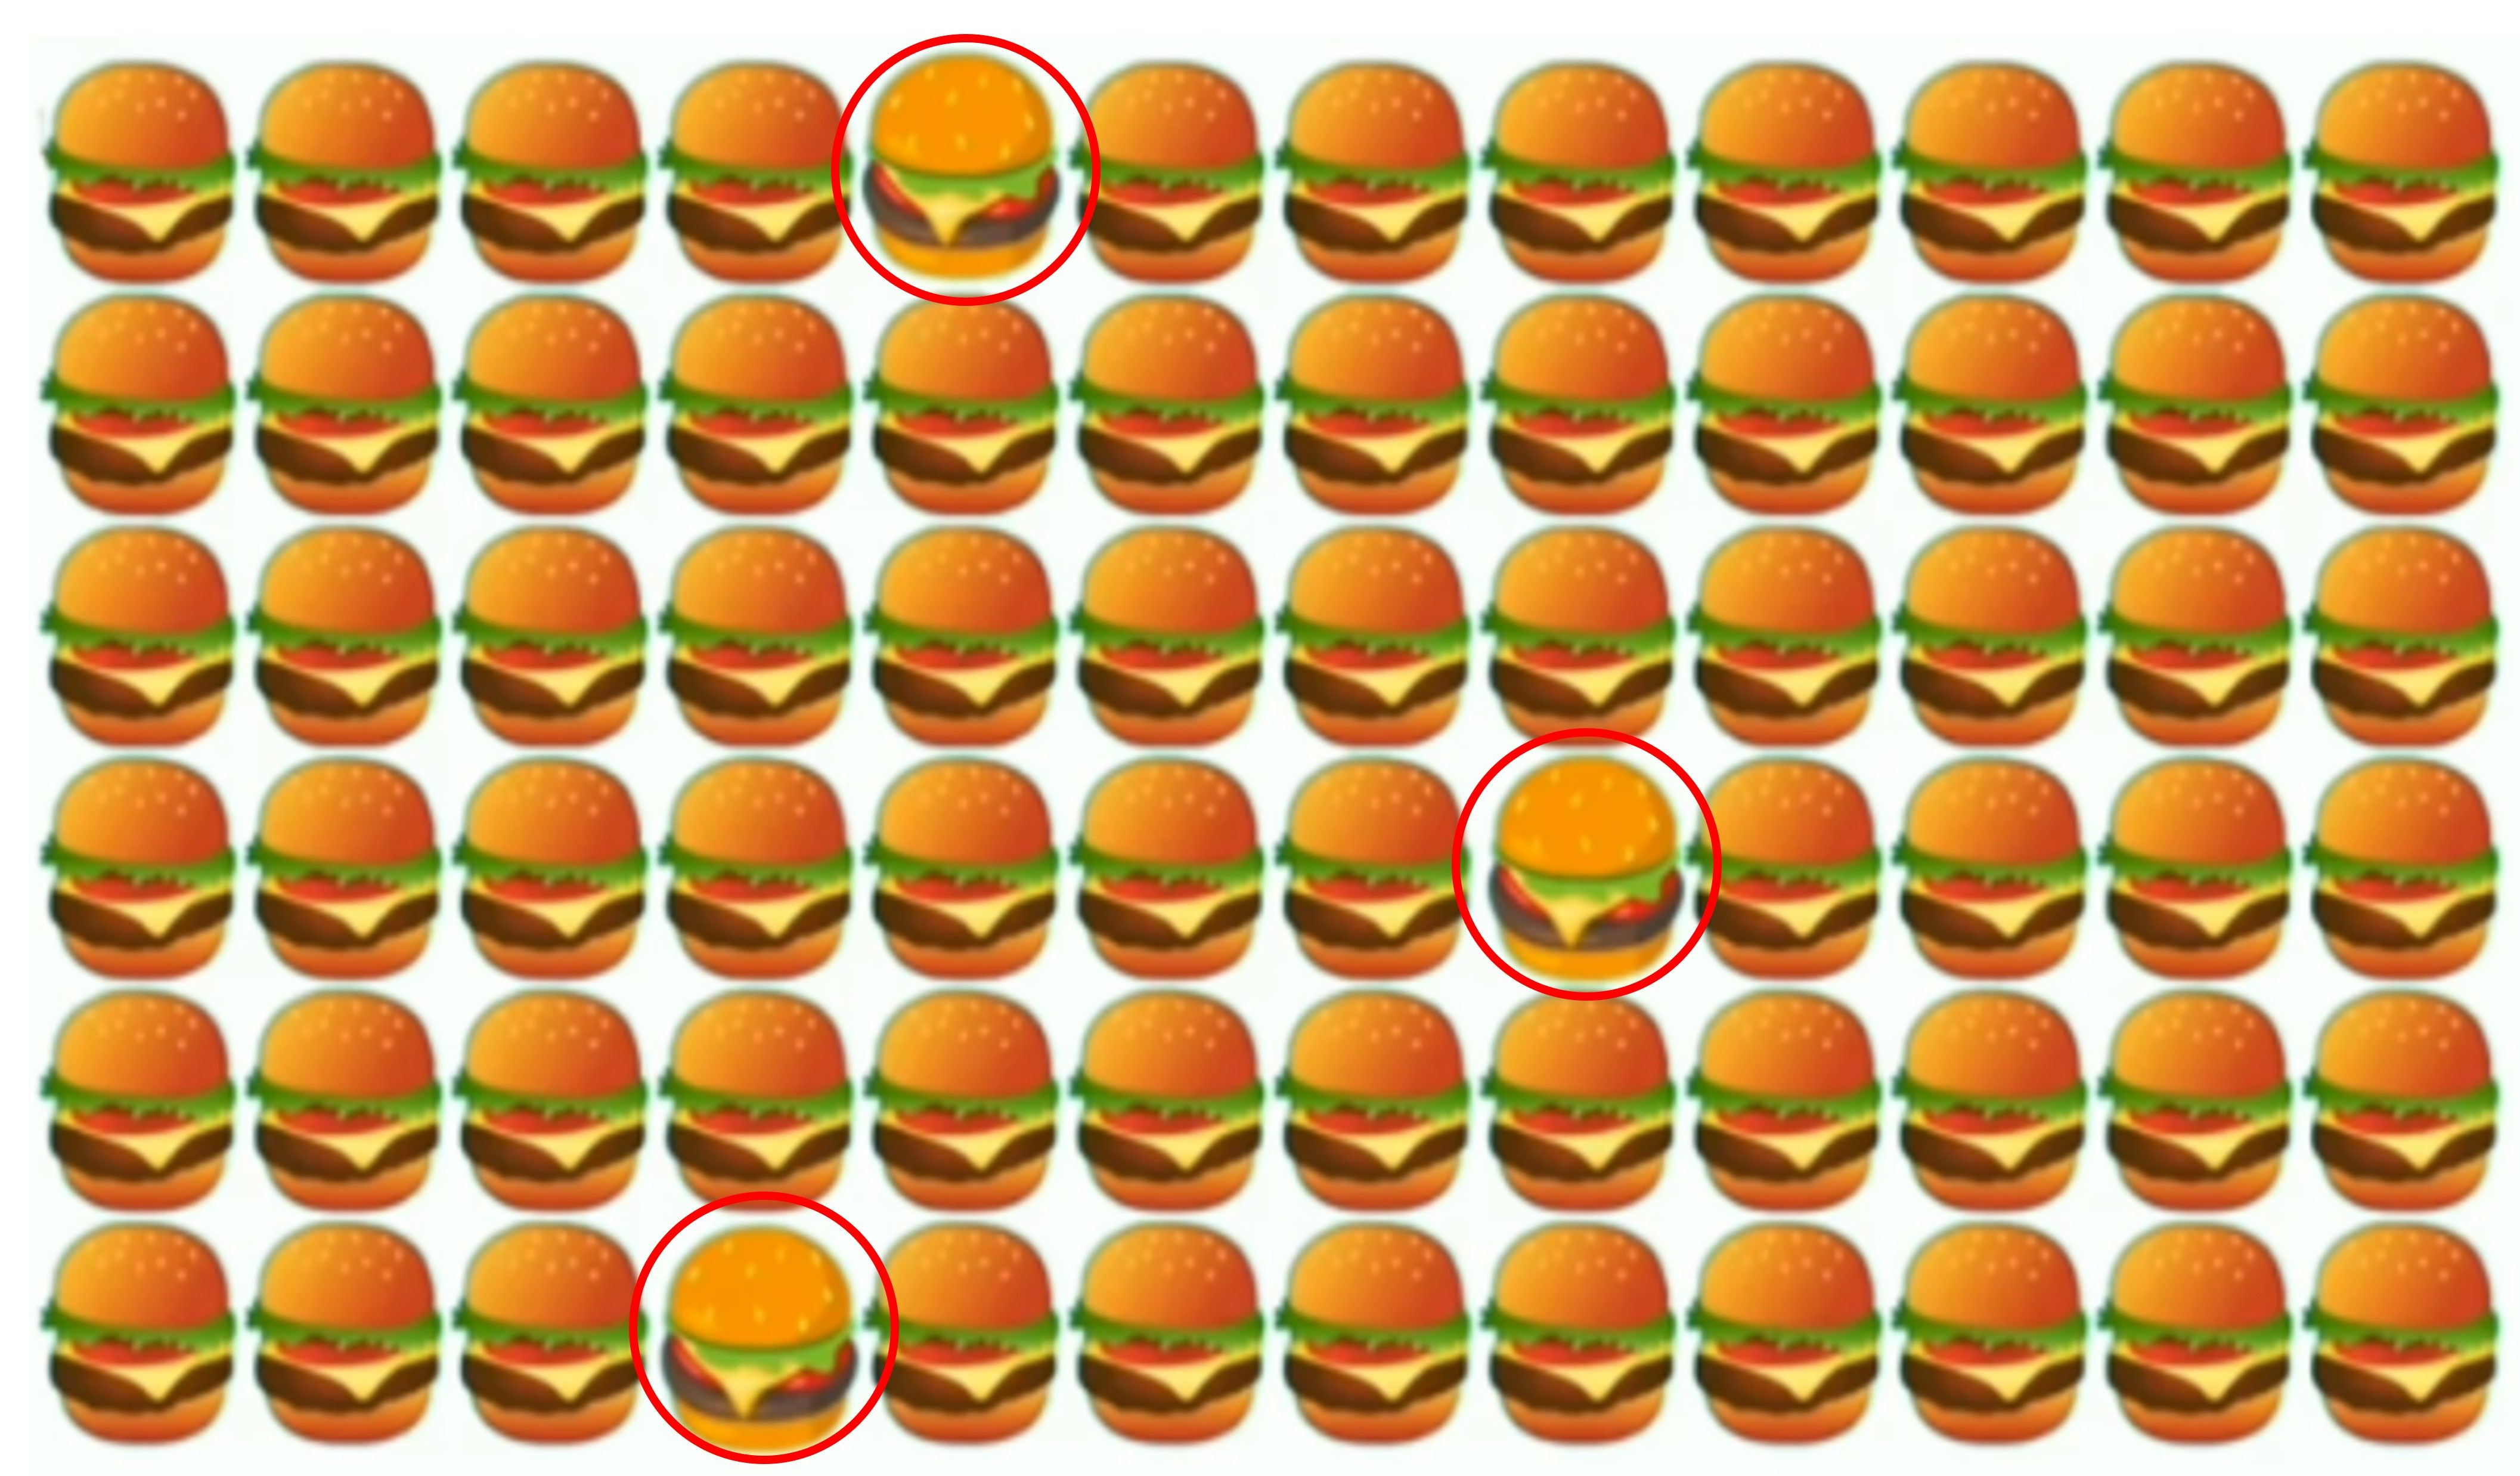 Jawaban tes fokus dalam mencari burger yang berbeda di gambar Timeless Life.  